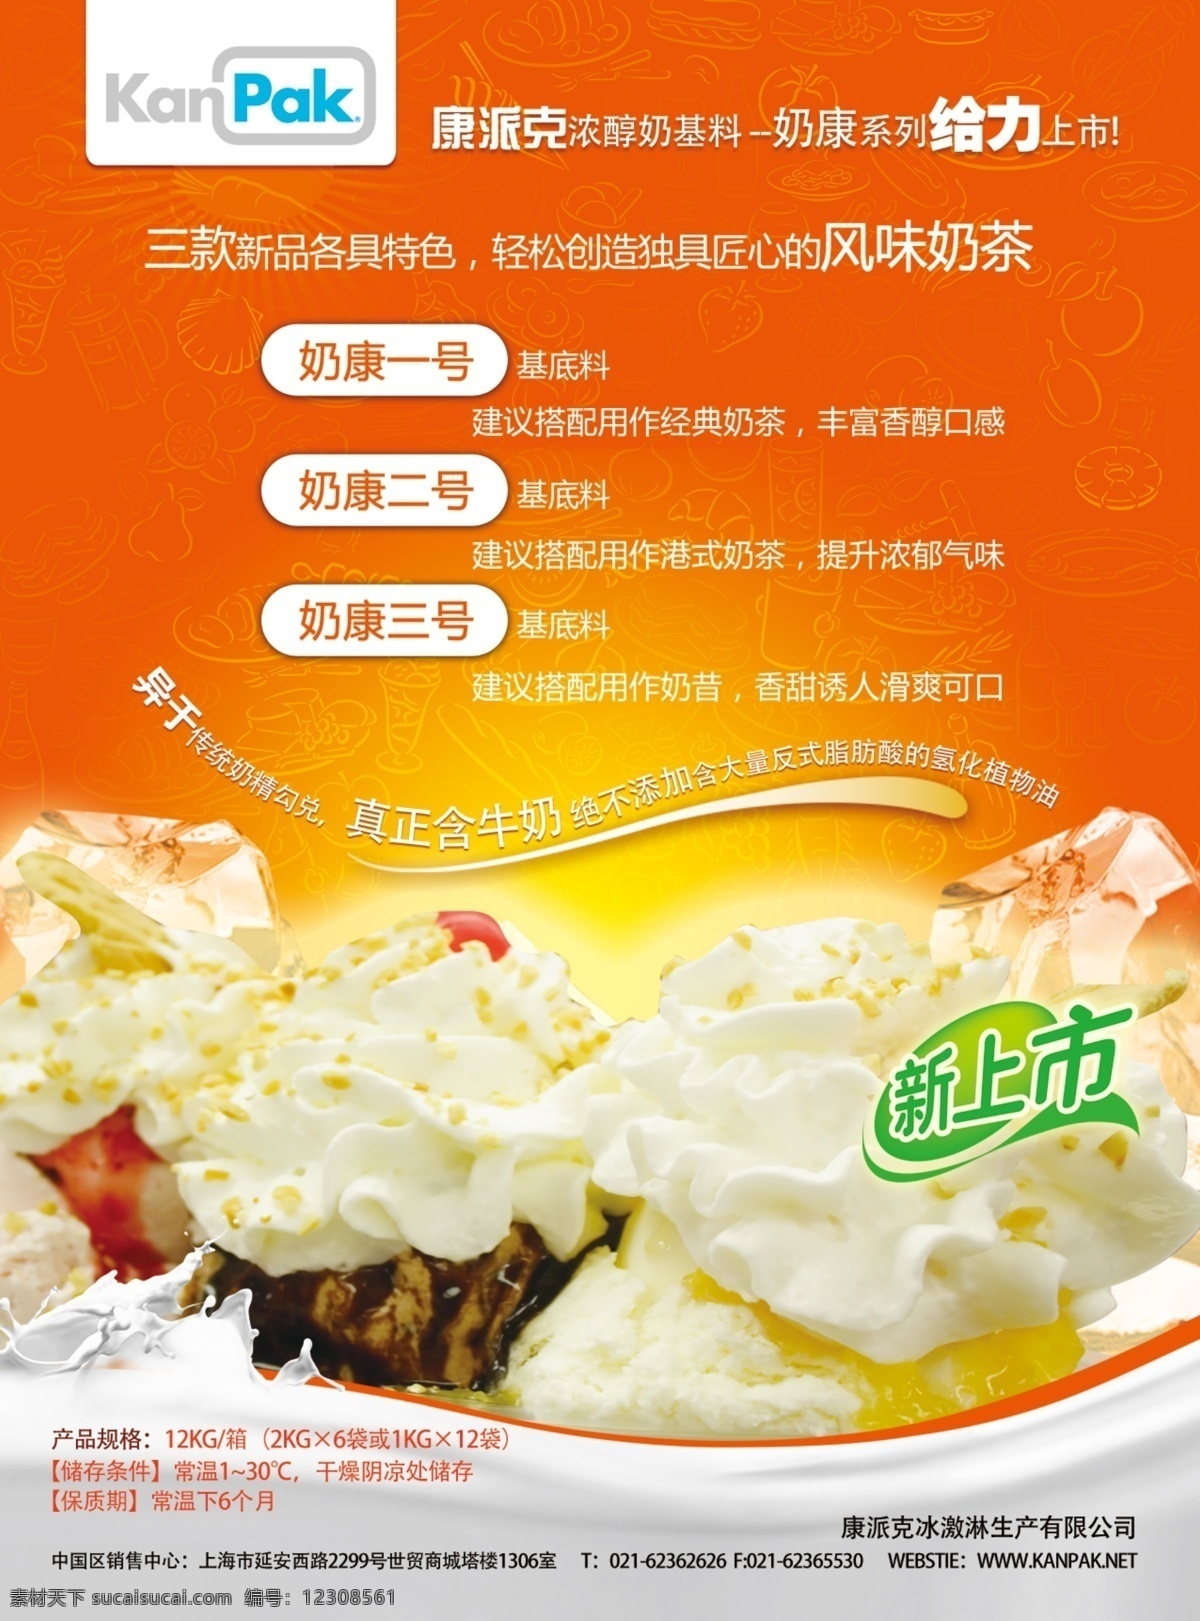 冰淇淋 海报 设计印刷 psd源文件 餐饮素材